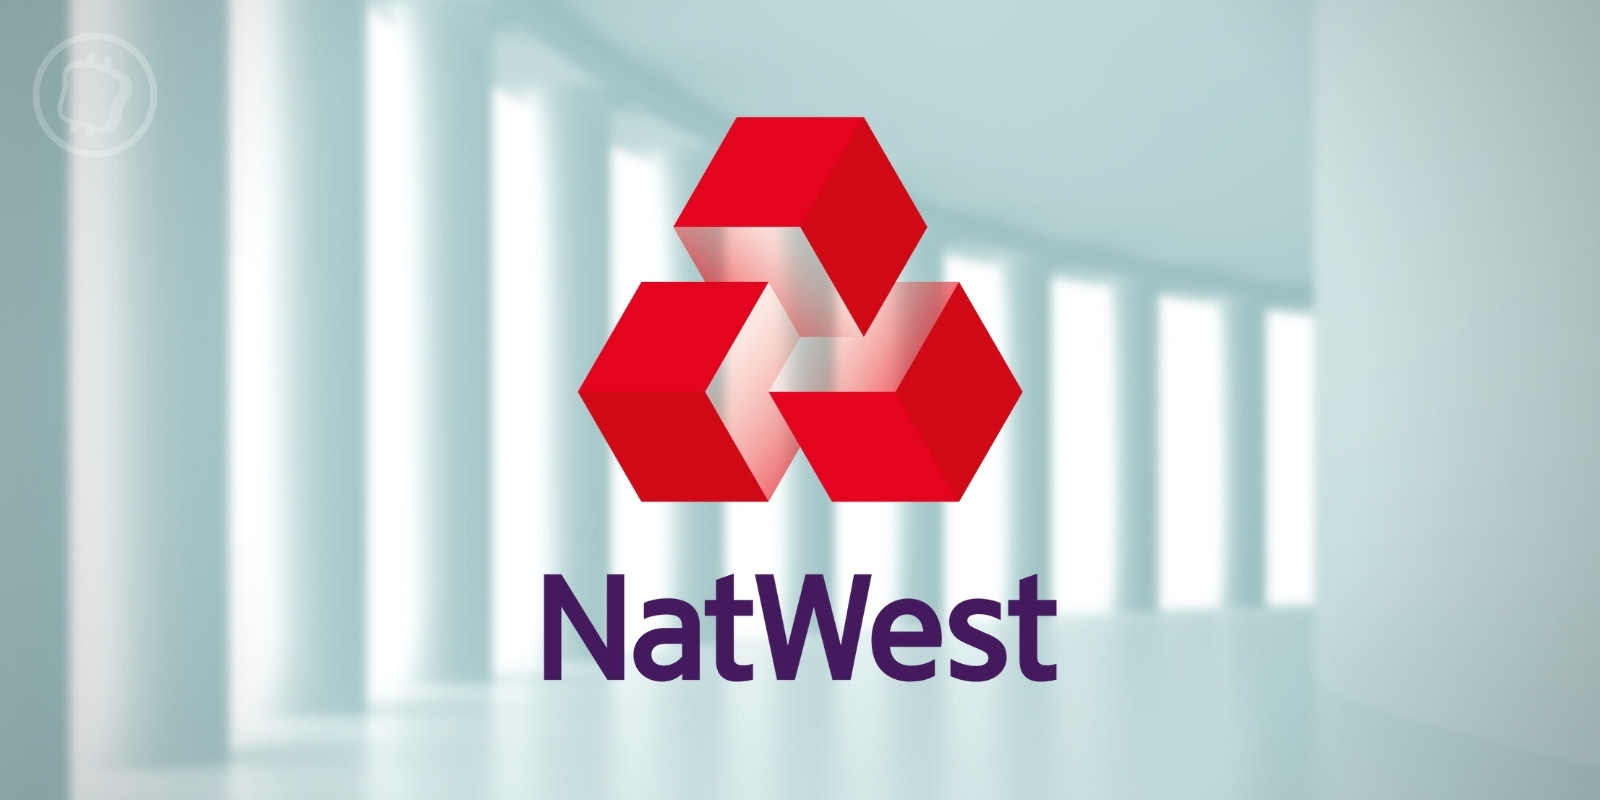 Royaume-Uni : la banque NatWest limite les transferts vers les plateformes d'échange de cryptomonnaies